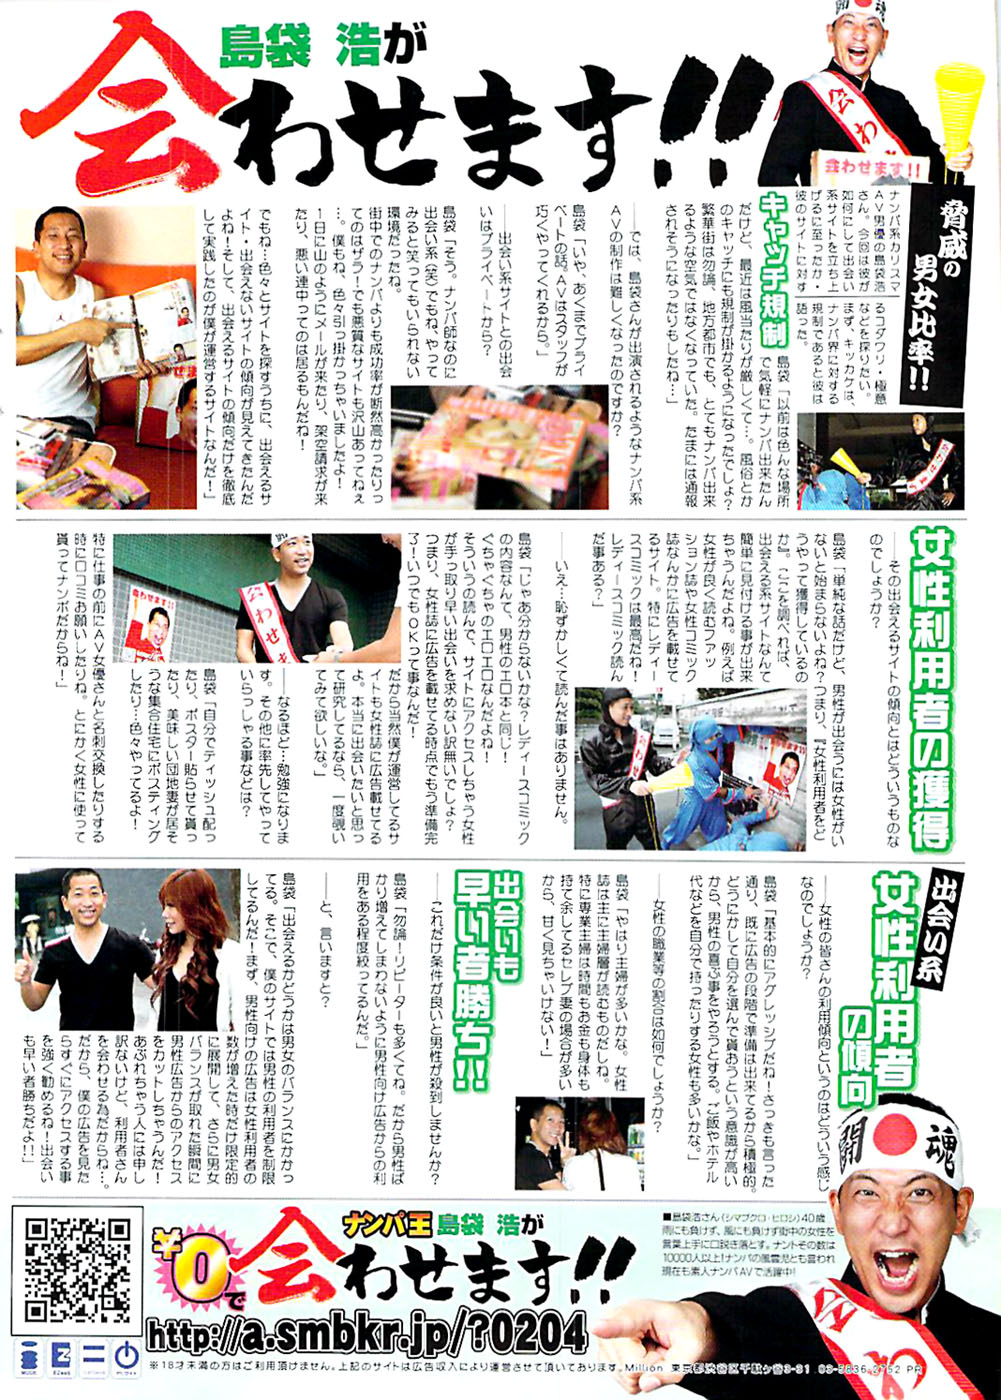 COMIC バズーカディープ 2007年11月号 Vol.3